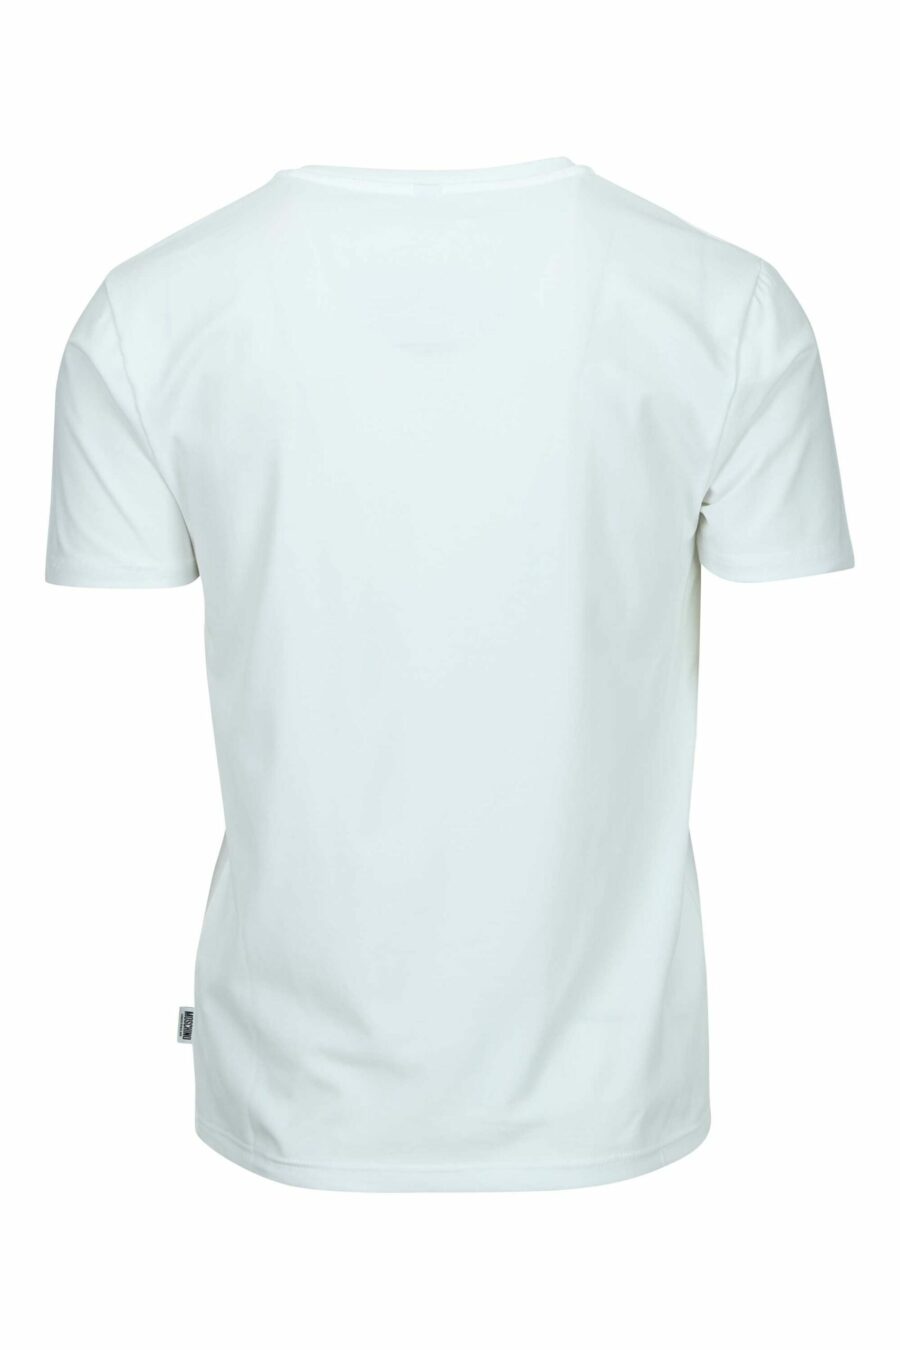 Weißes T-Shirt mit Mini-Logo-Bärenaufnäher "underbear" - 667113605678 1 skaliert